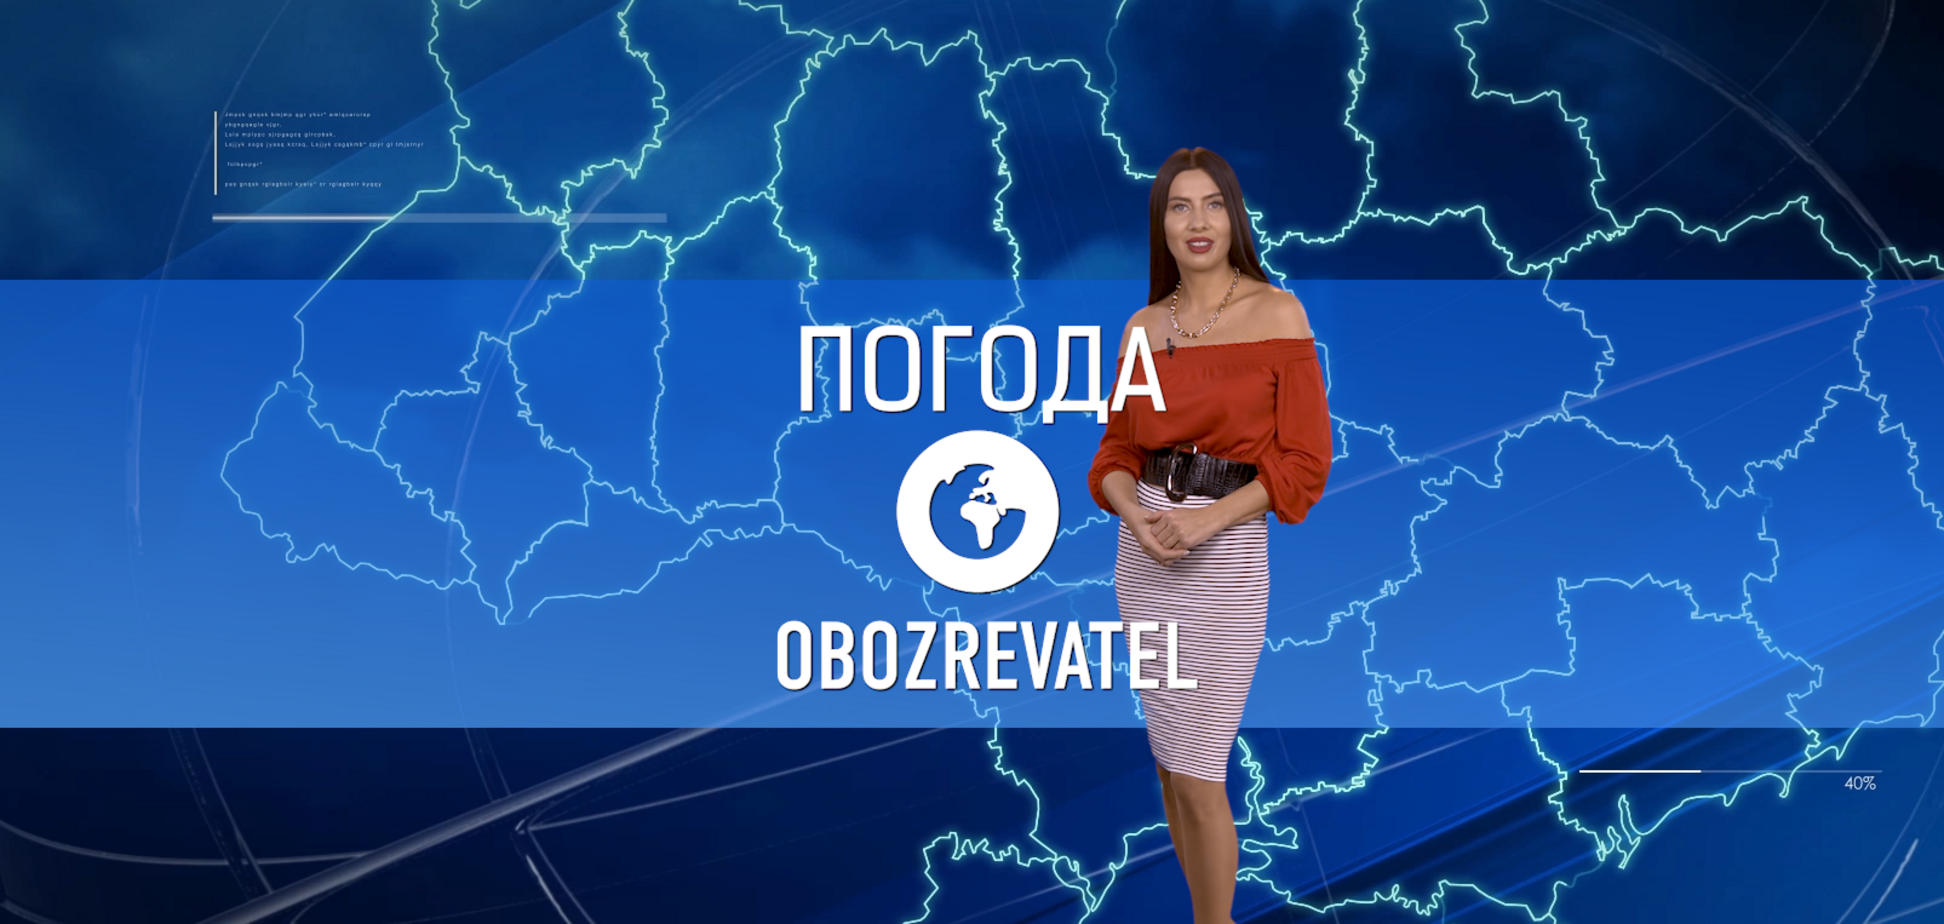 Прогноз погоды в Украине на вторник, 28 декабря, с Алисой Мярковской